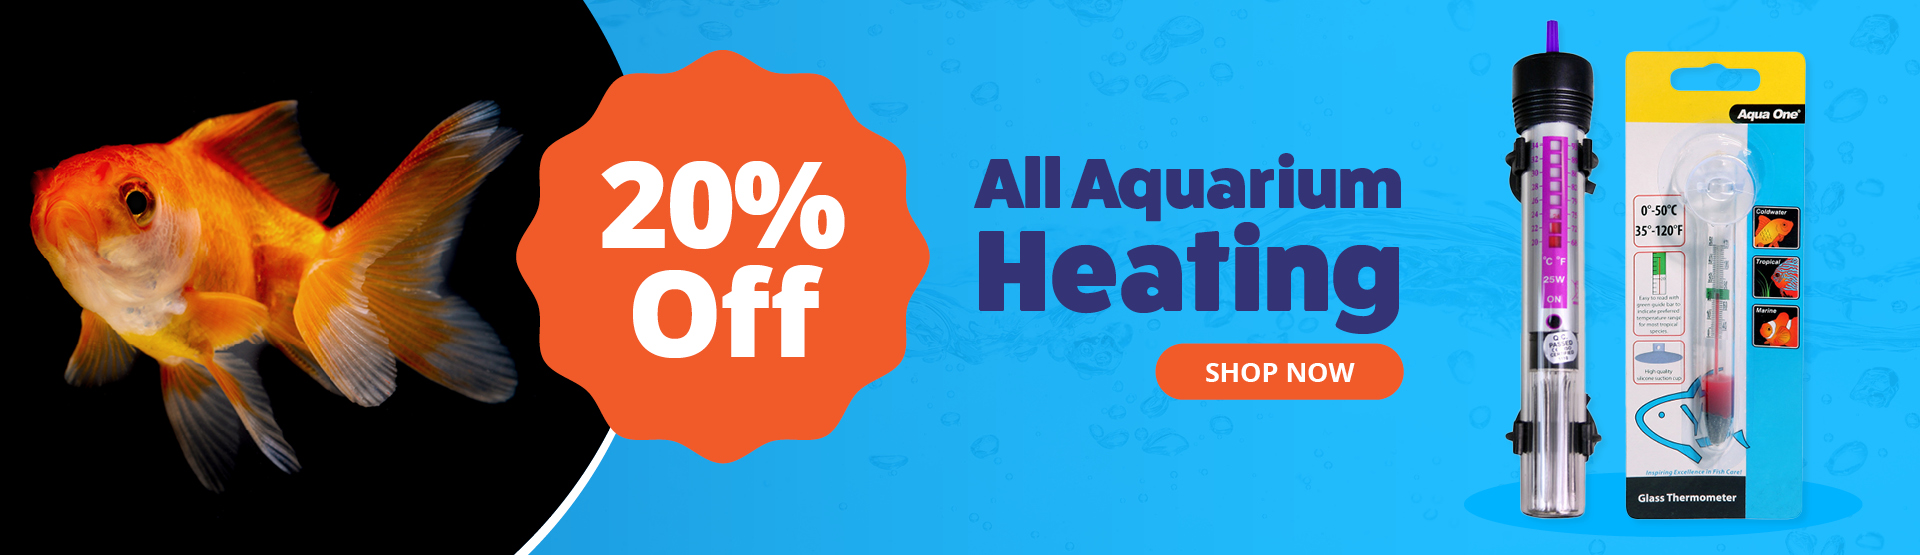 All Aquarium Heating 20% off 